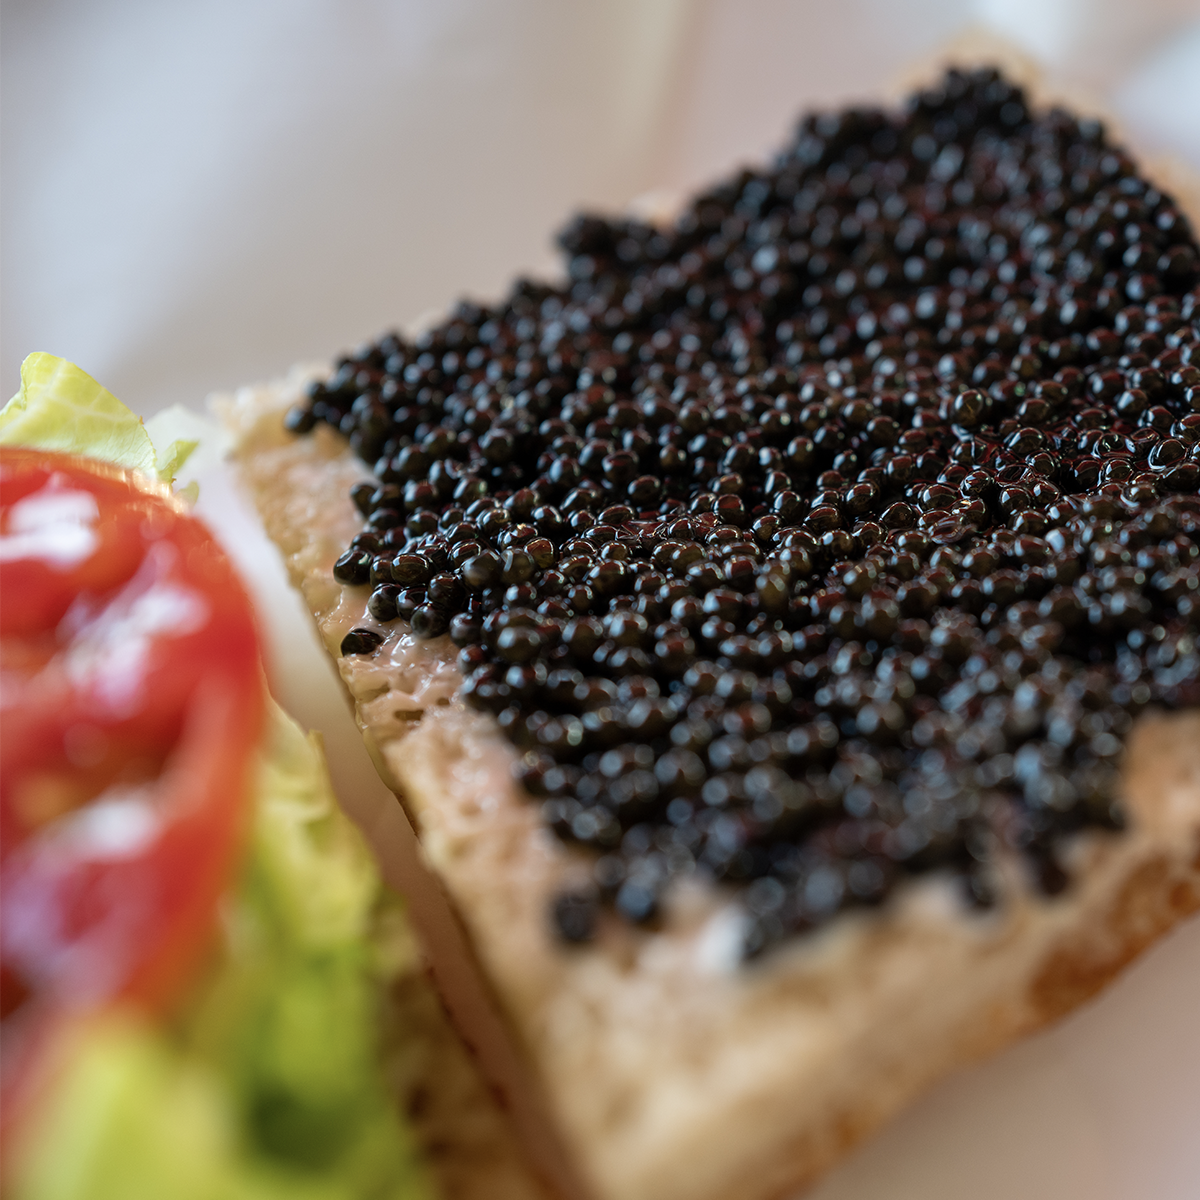 The YOLO Caviar "C.L.T." by Bread Head and Roe Caviar